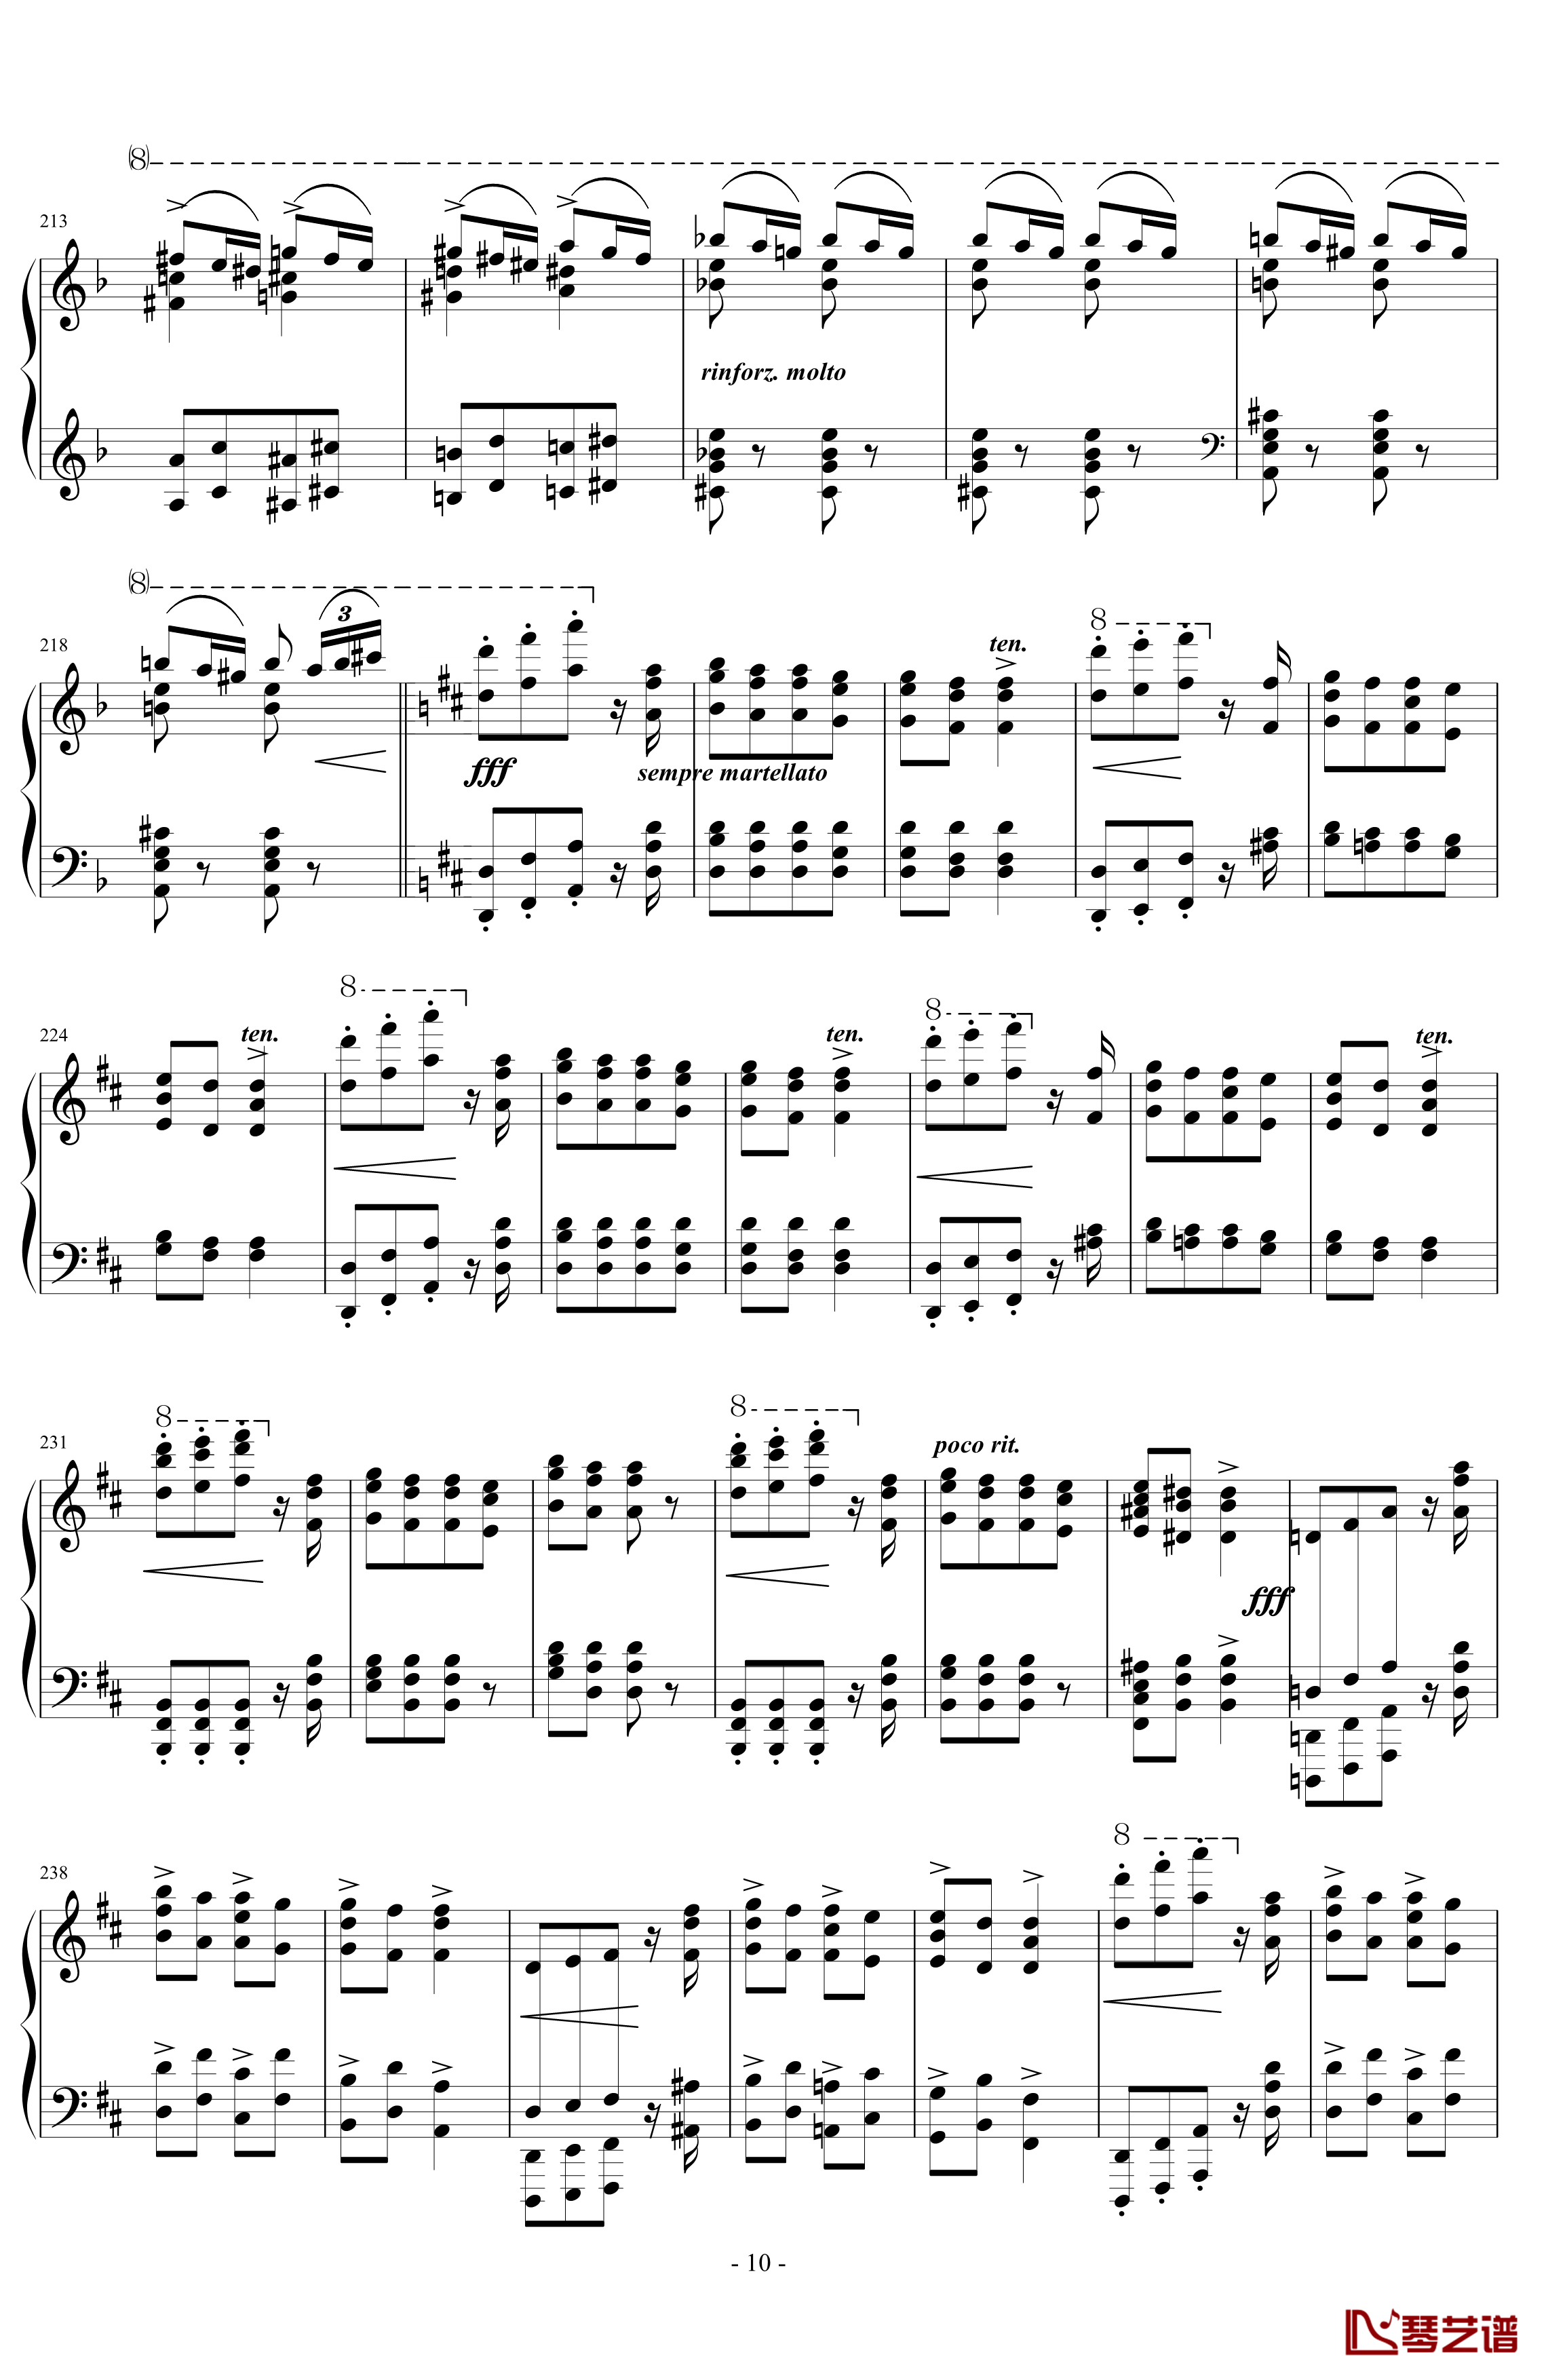 匈牙利狂想曲第7号钢琴谱-一首欢快活泼的舞曲-李斯特10